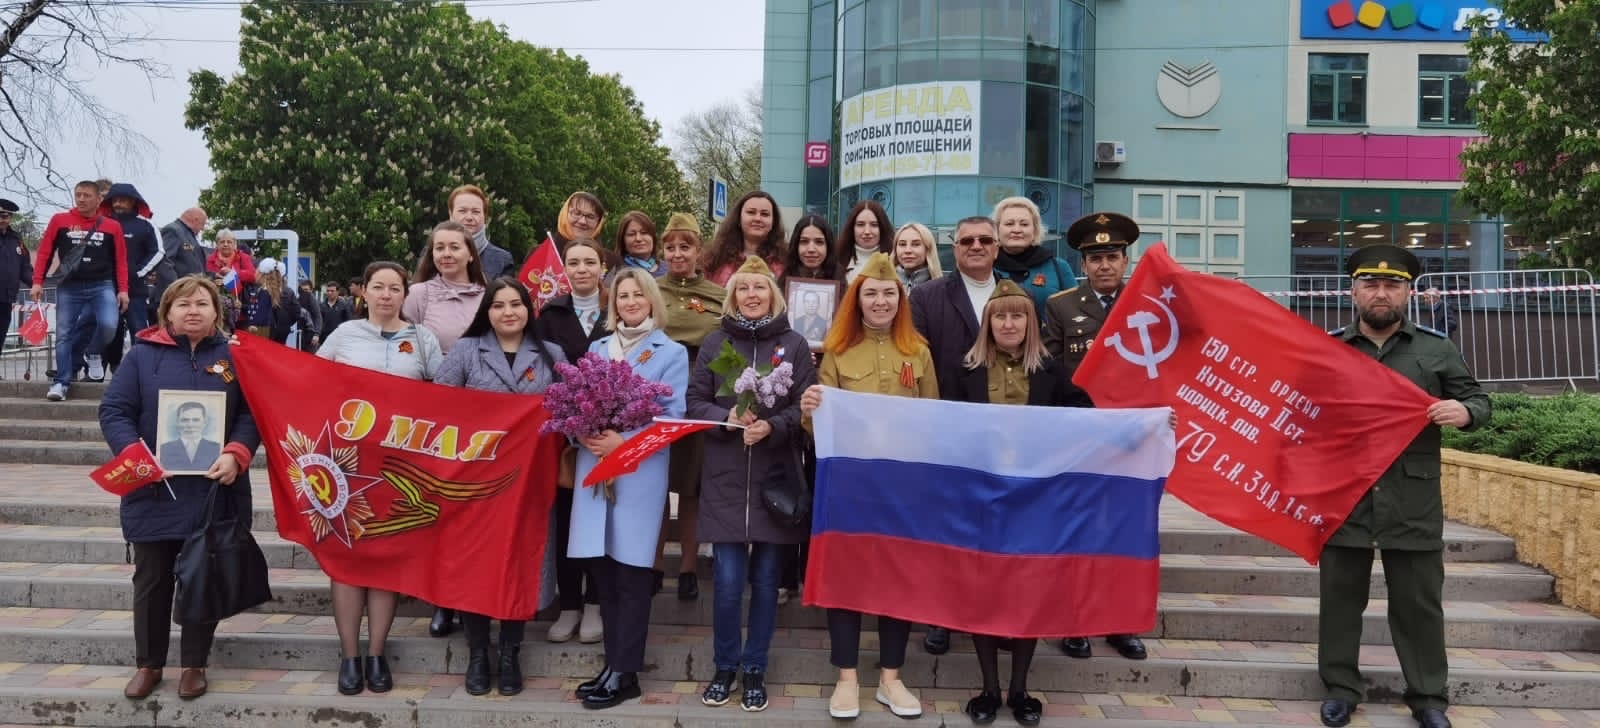 МБОУ СОШ 23 на главной площади города Михайловска на параде посвящённому «78-ой годовщине Победы в Великой Отечественной войне»!